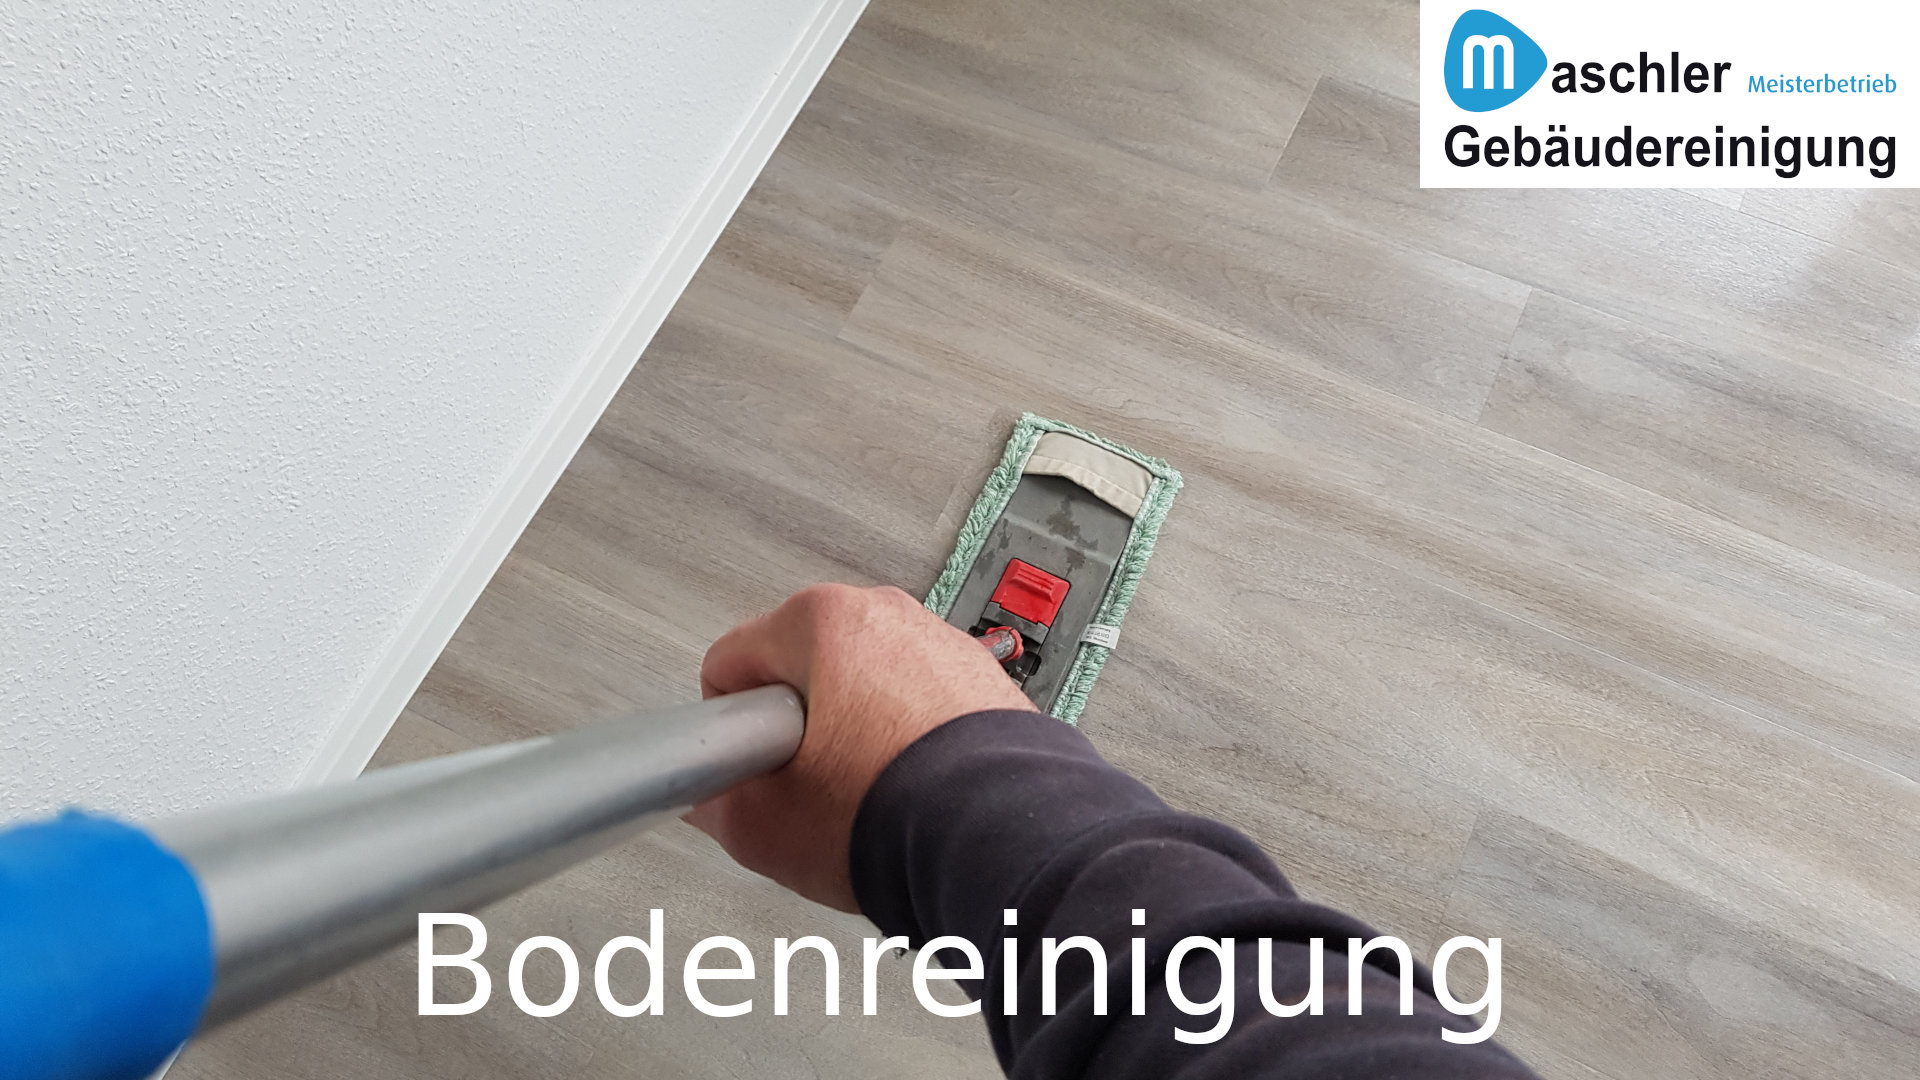 Unterhaltsreinigung von Fußbodenbelägen - Gebäudereinigung Maschler GmbH